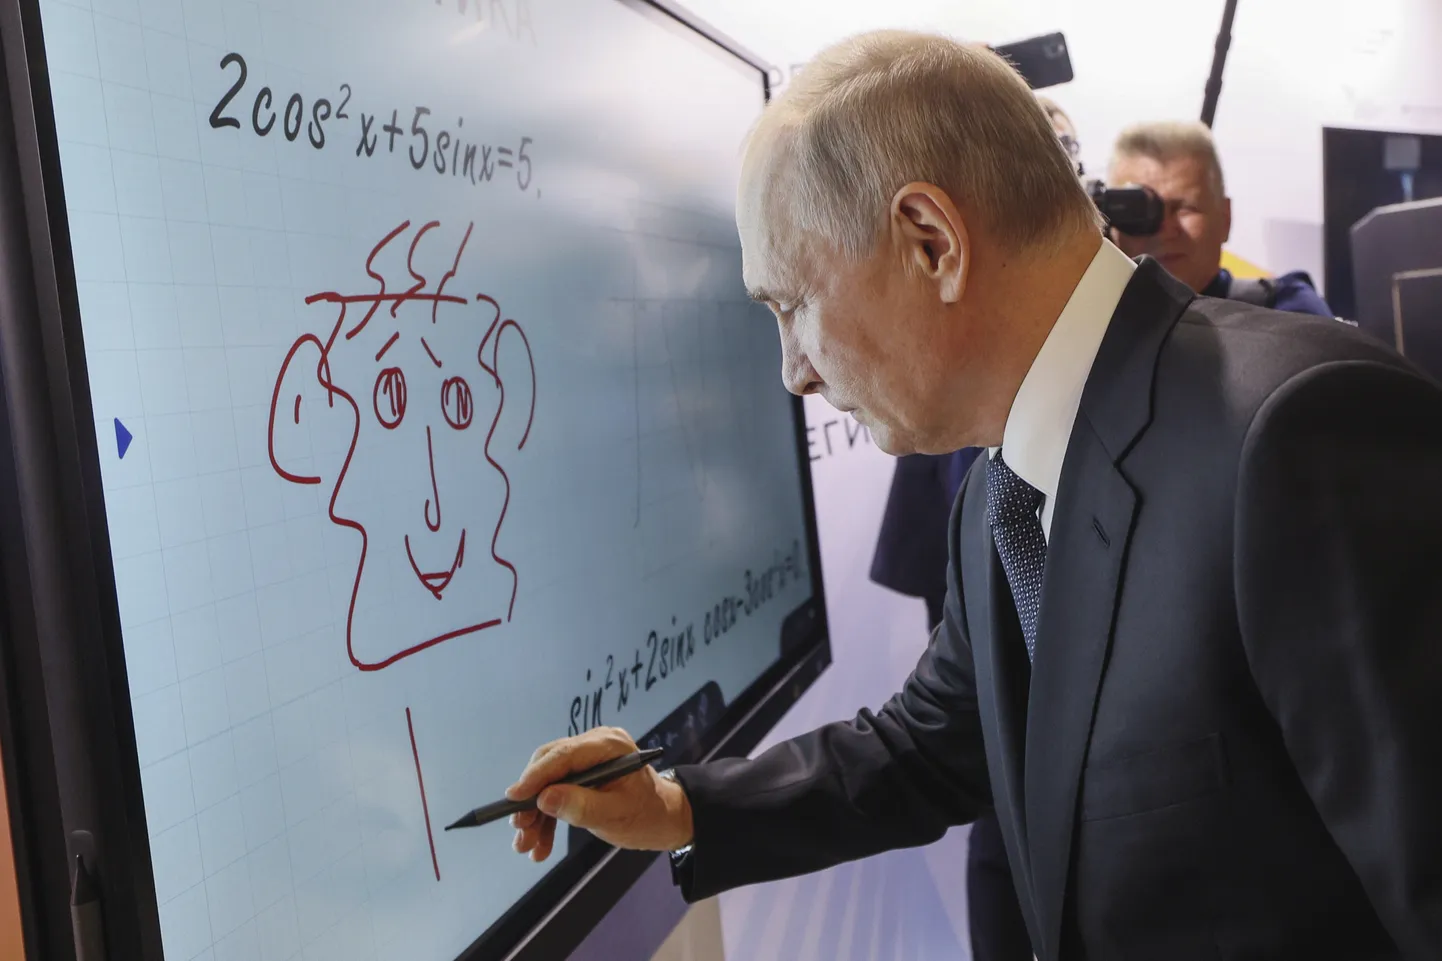 Venemaa president Vladimir Putin joonistas 29. juunil 2023 Moskvas toimunud foorumil naerunäo